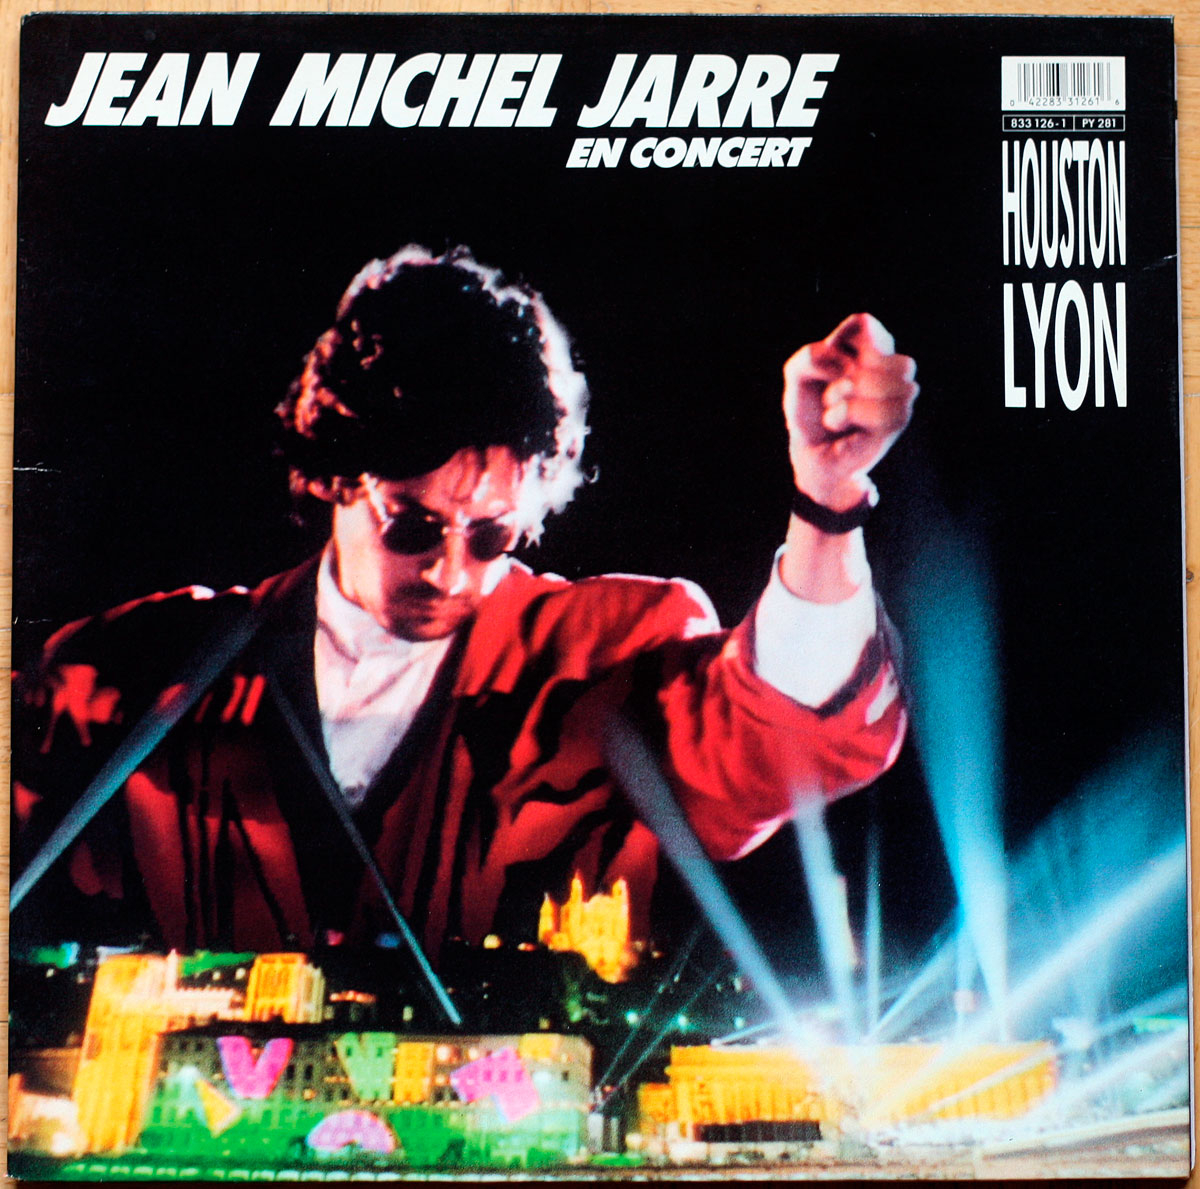 Jean-Michel Jarre • En concert • Houston • Lyon • Dreyfuss 833 126-1 • 1987